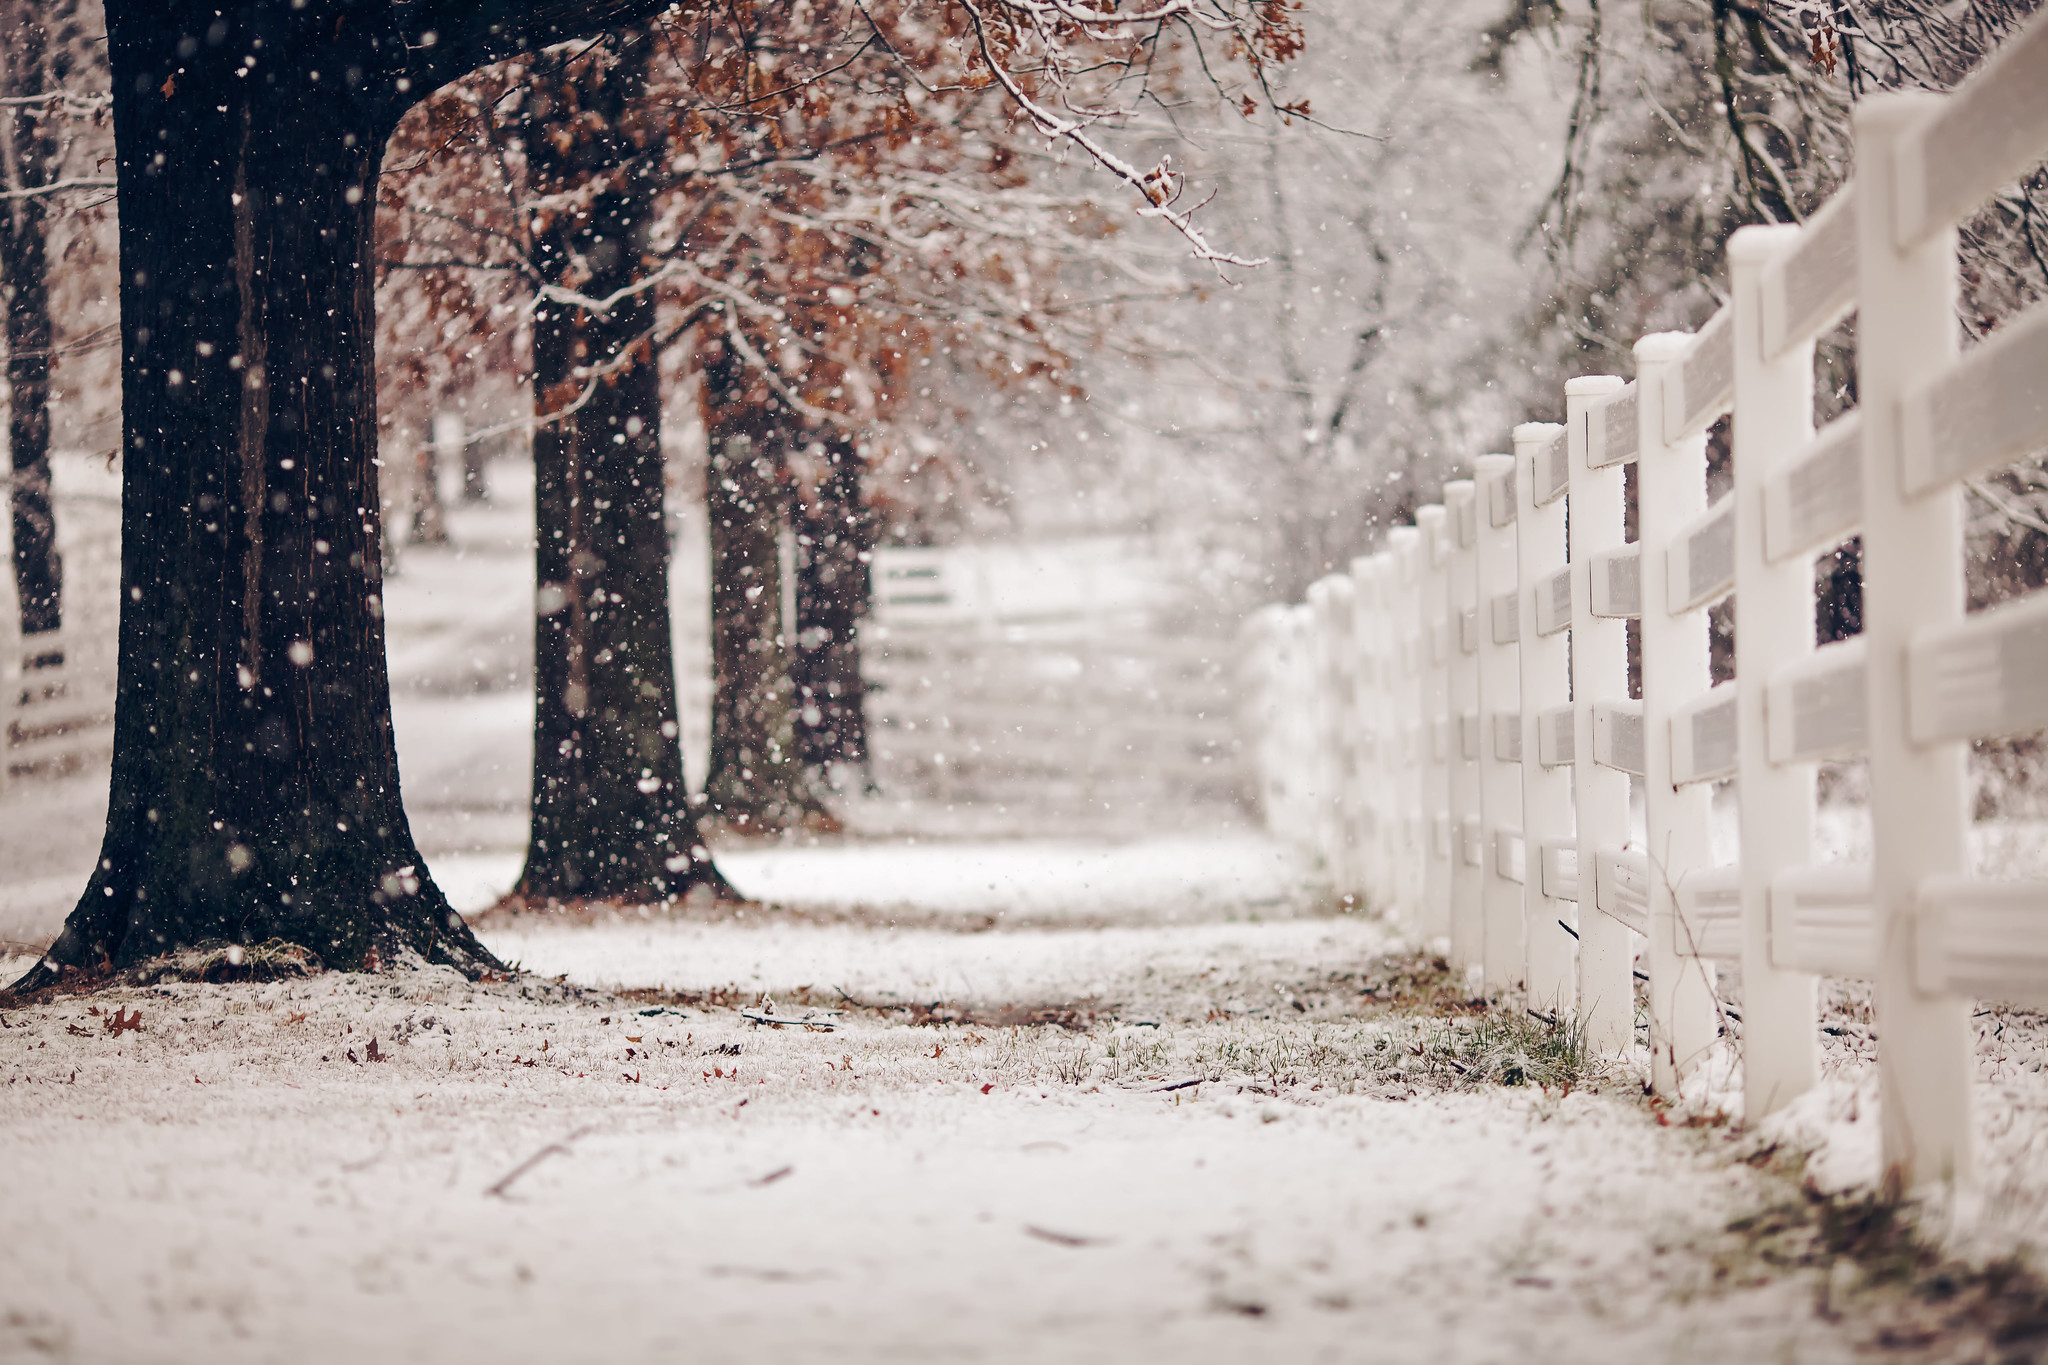 Скачать картинку Зима, Снег, Фотографии в телефон бесплатно.